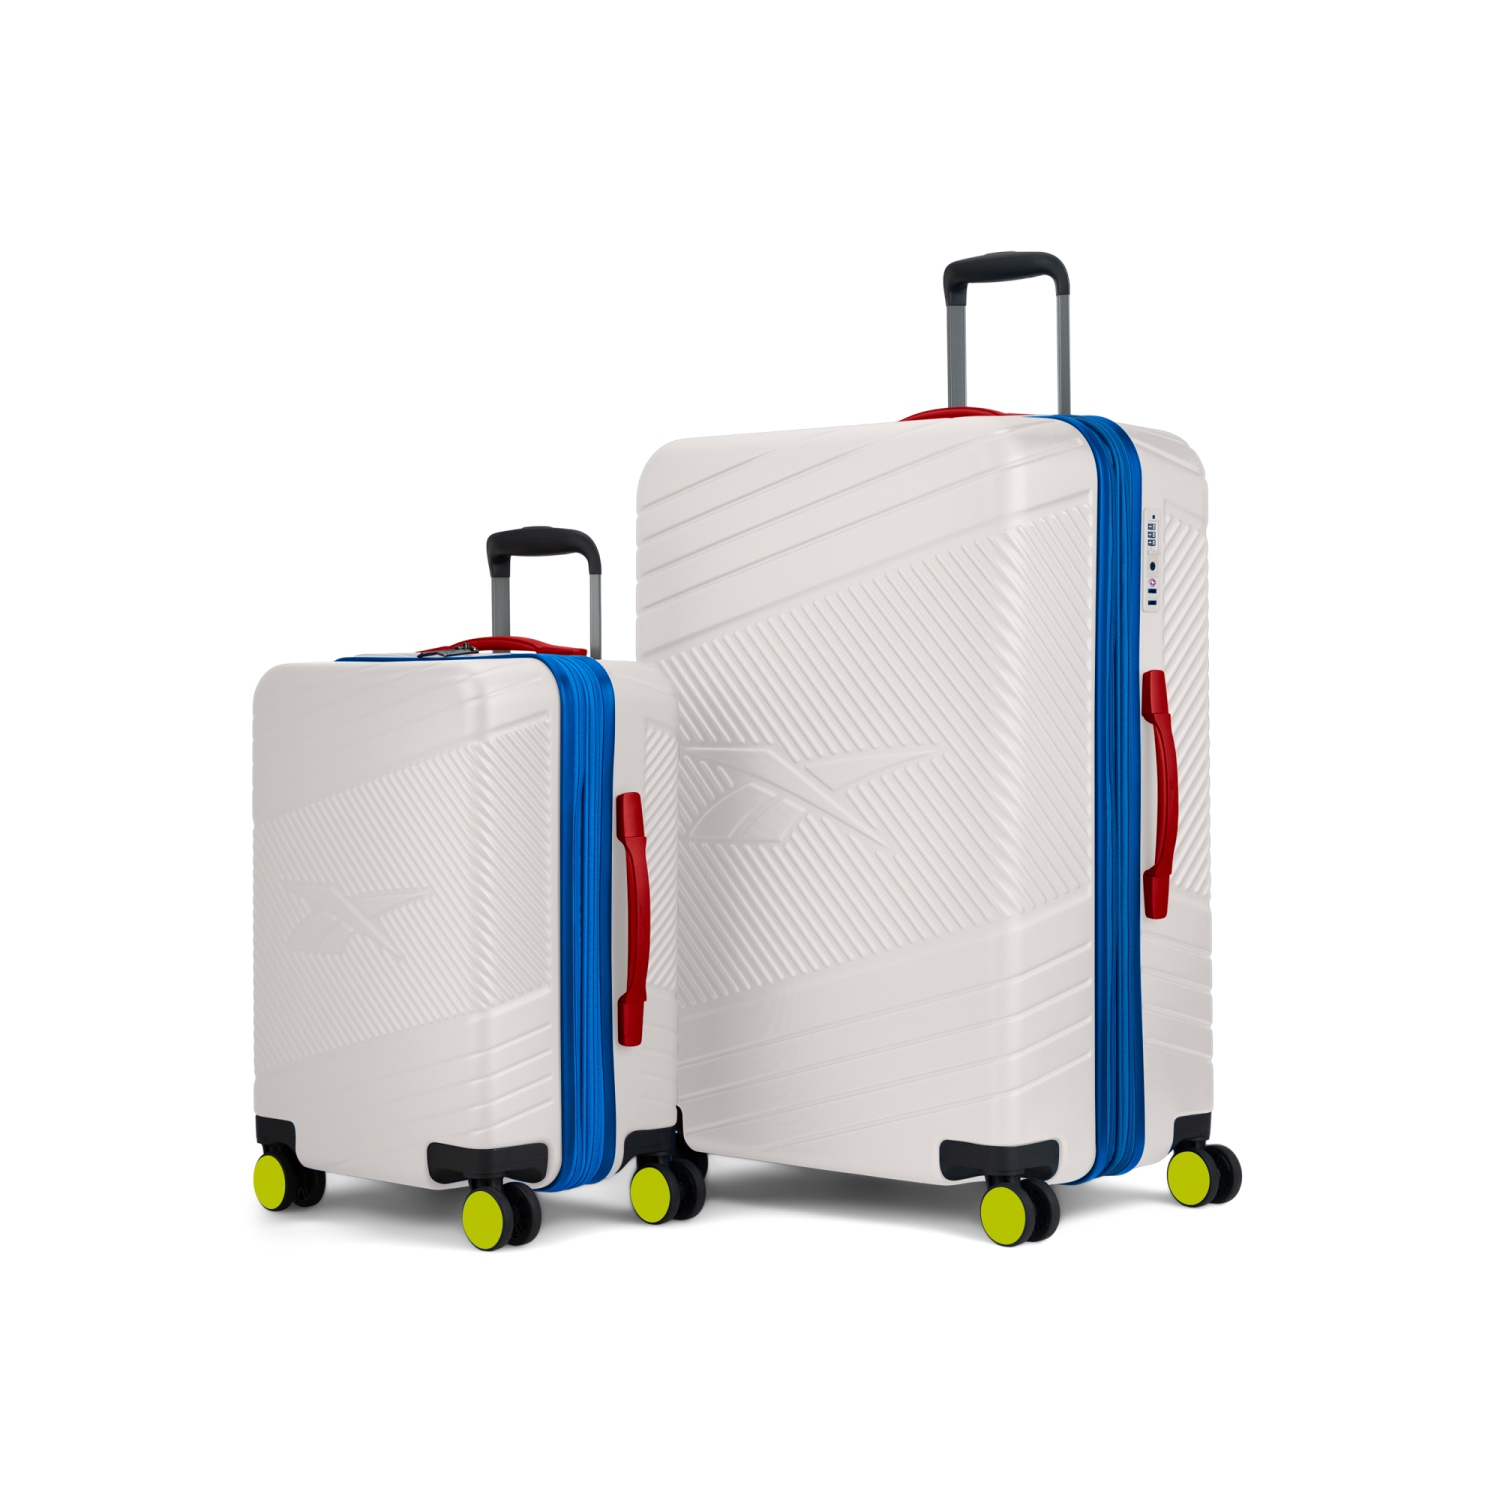 Reebok Go Collection - 2 pcs Luggage Set - White